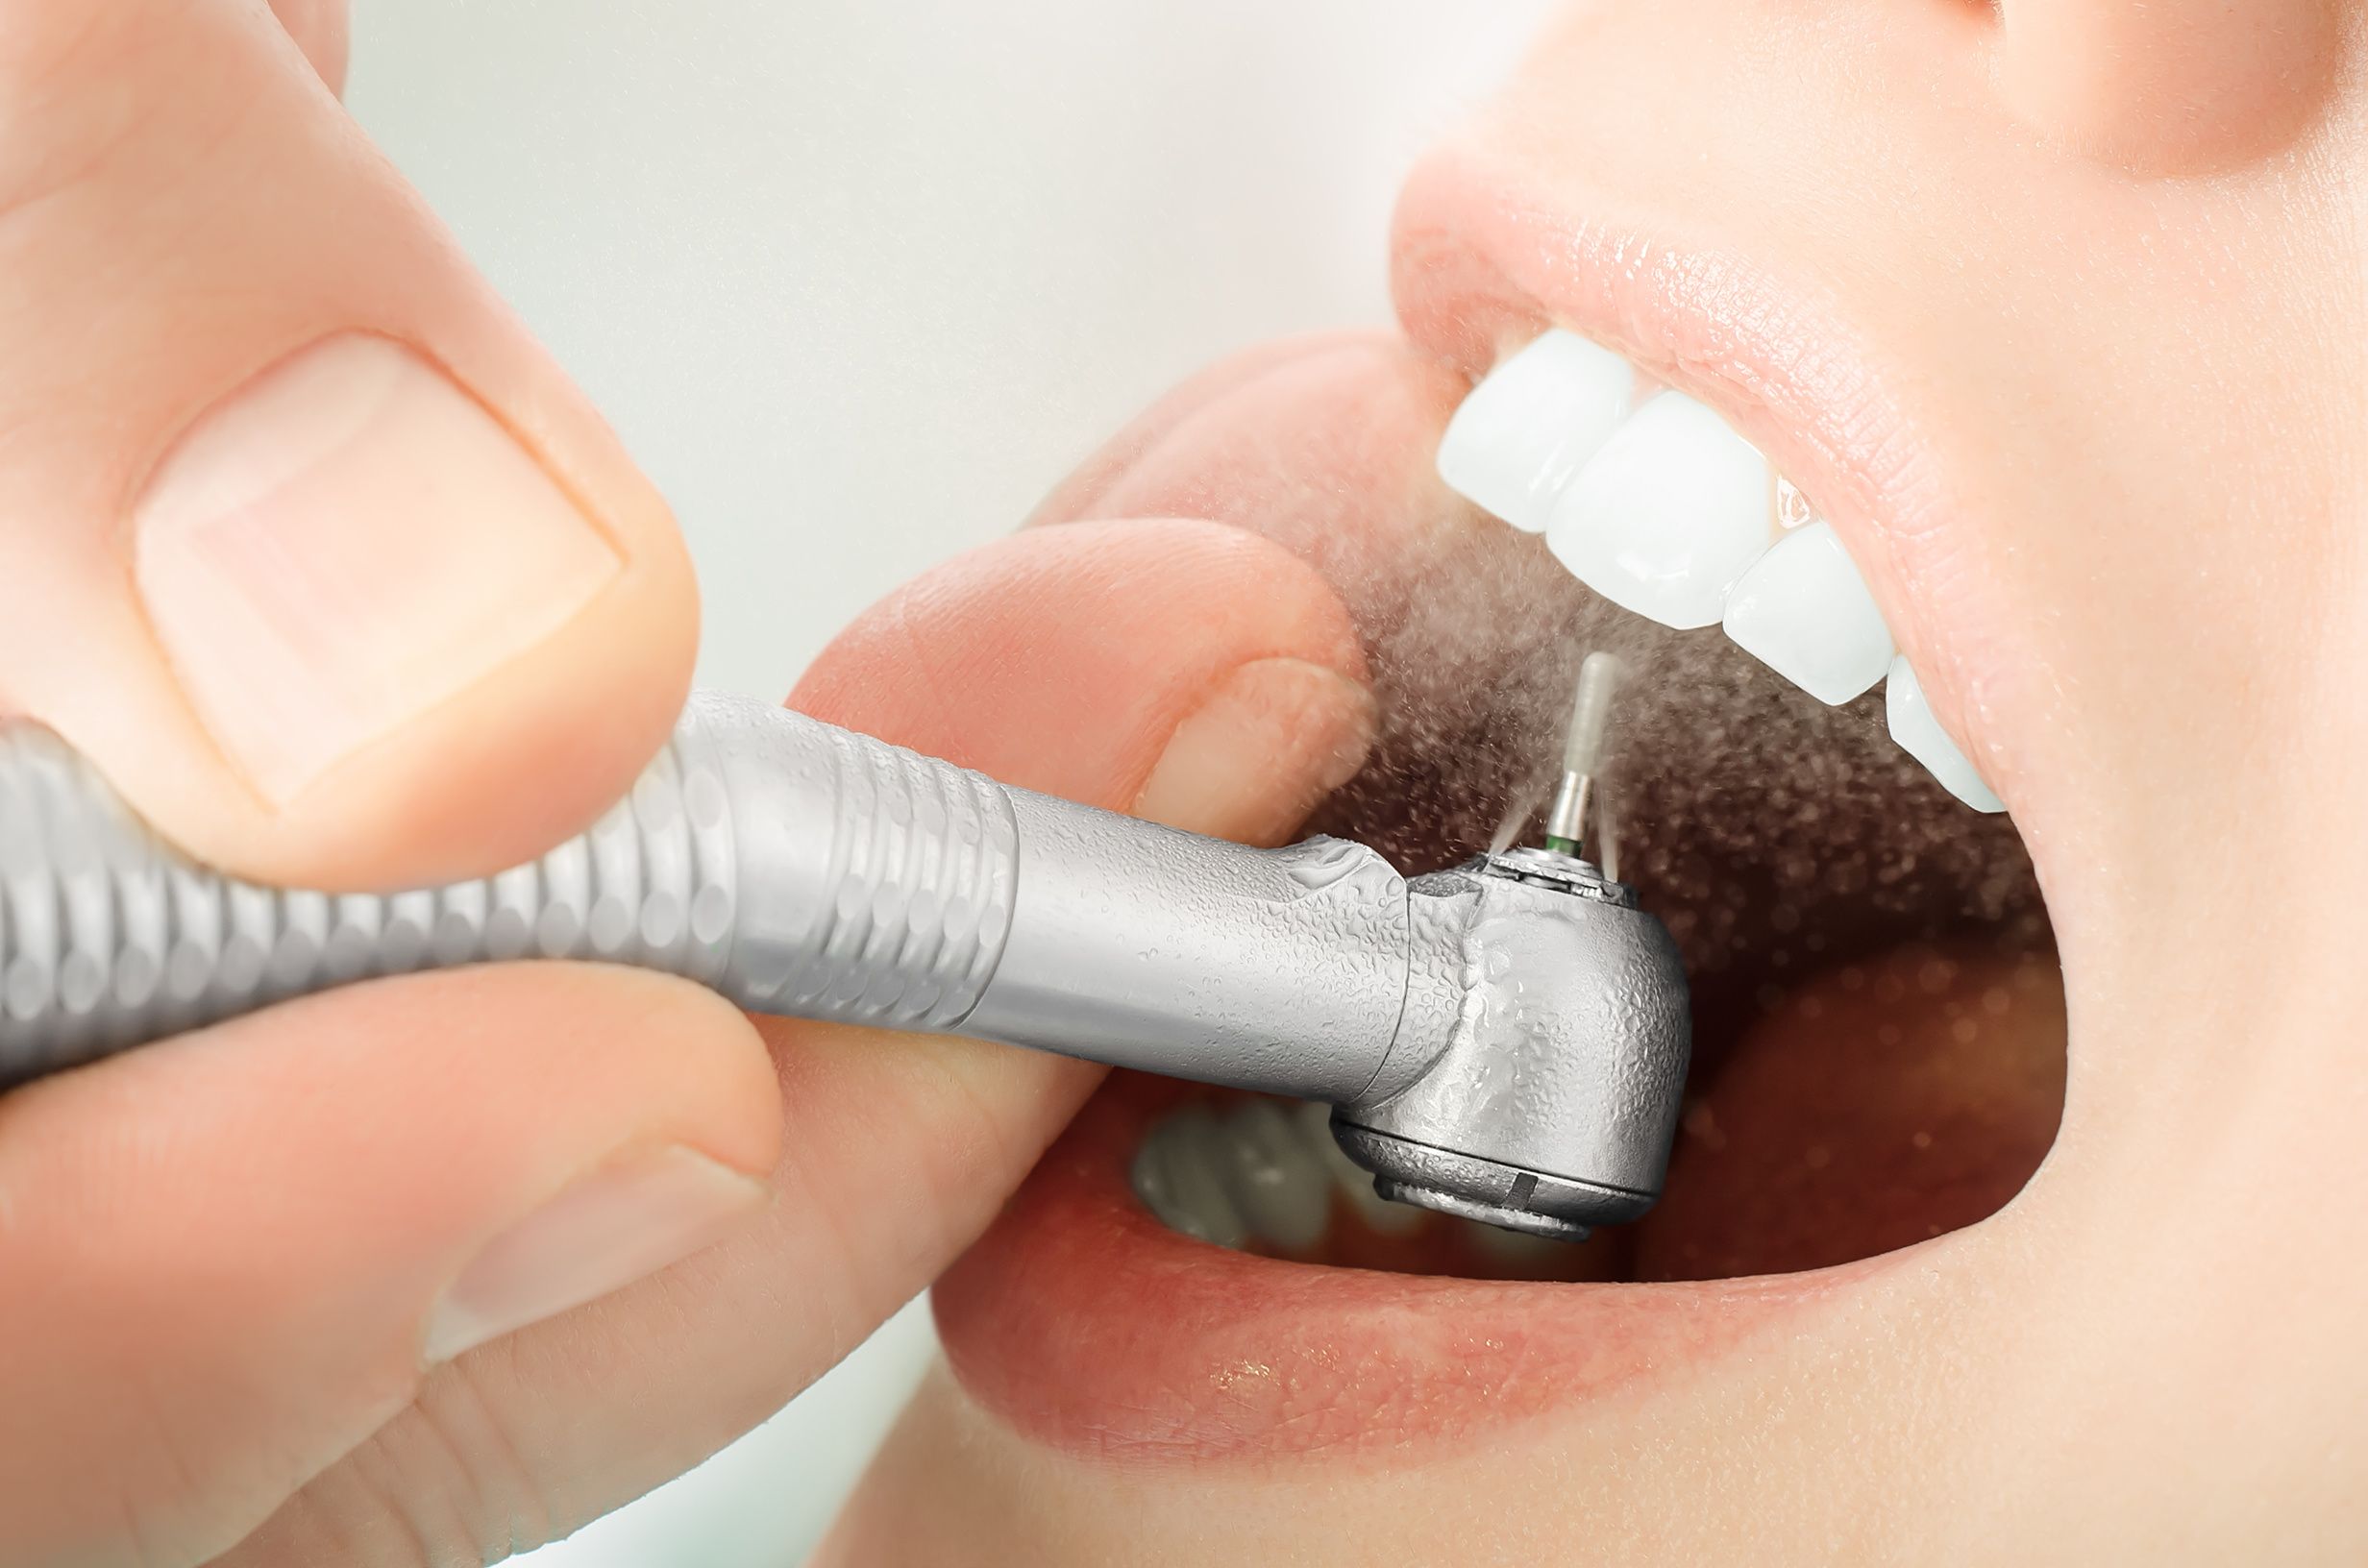 پرکردن دندان یک سطحی با کامپوزیت سوئیسی